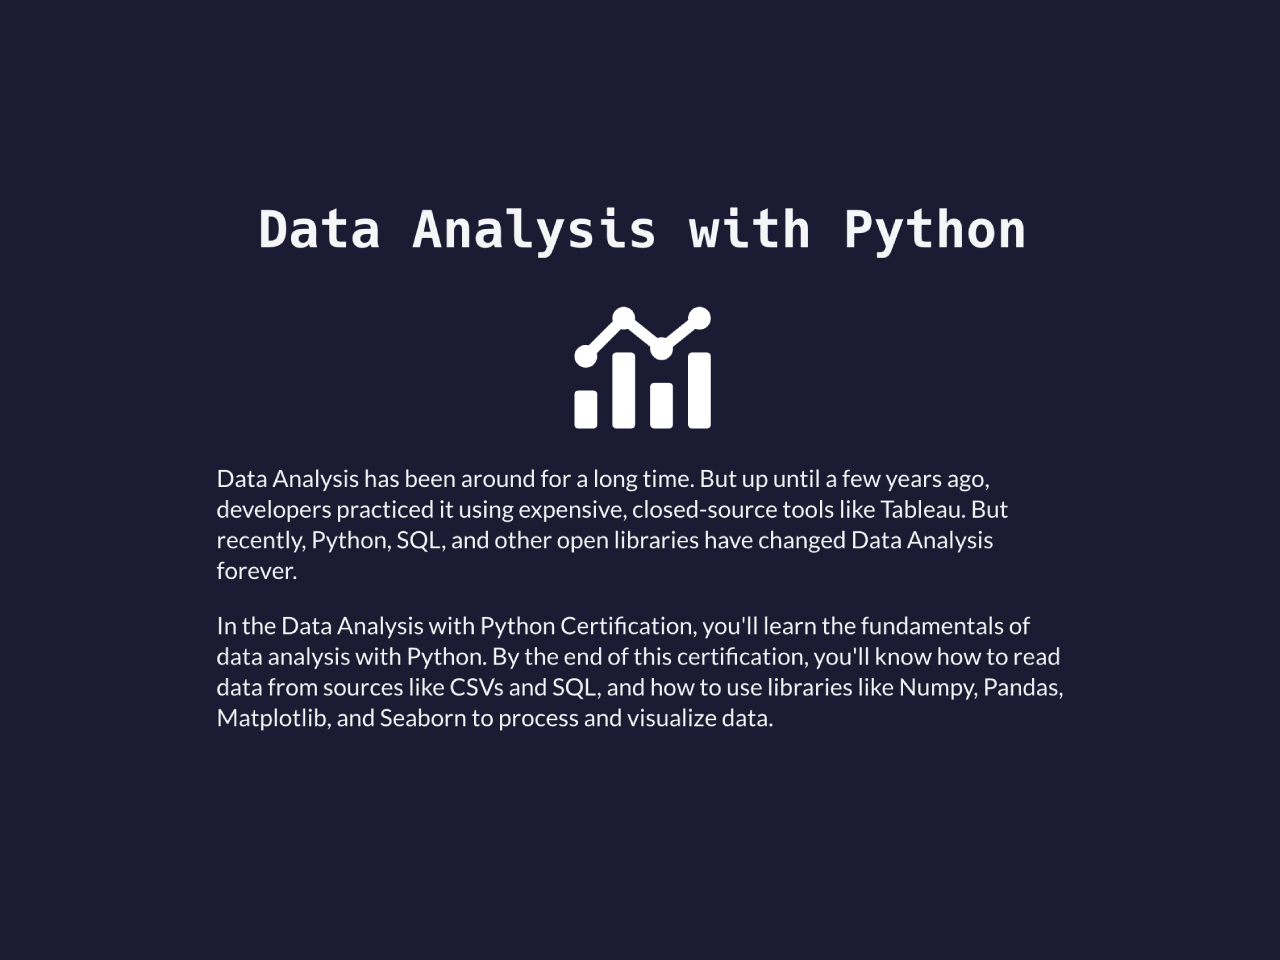 freeCodeCamp - Data Analysis with Python